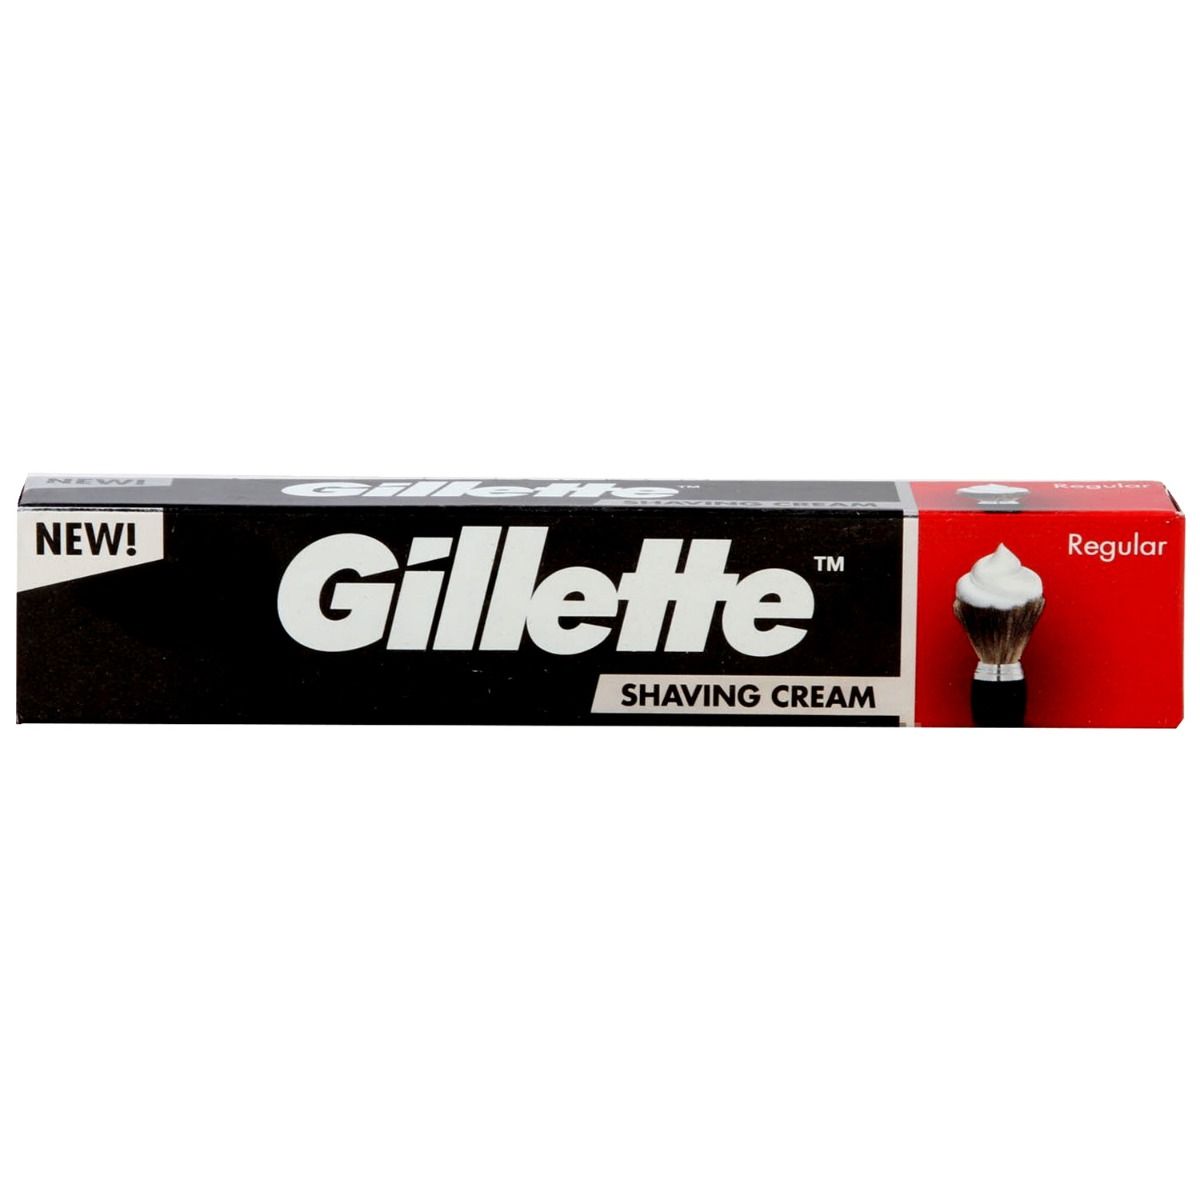 Gillette Regular Shaving Cream, 30 gm, Pack of 1 